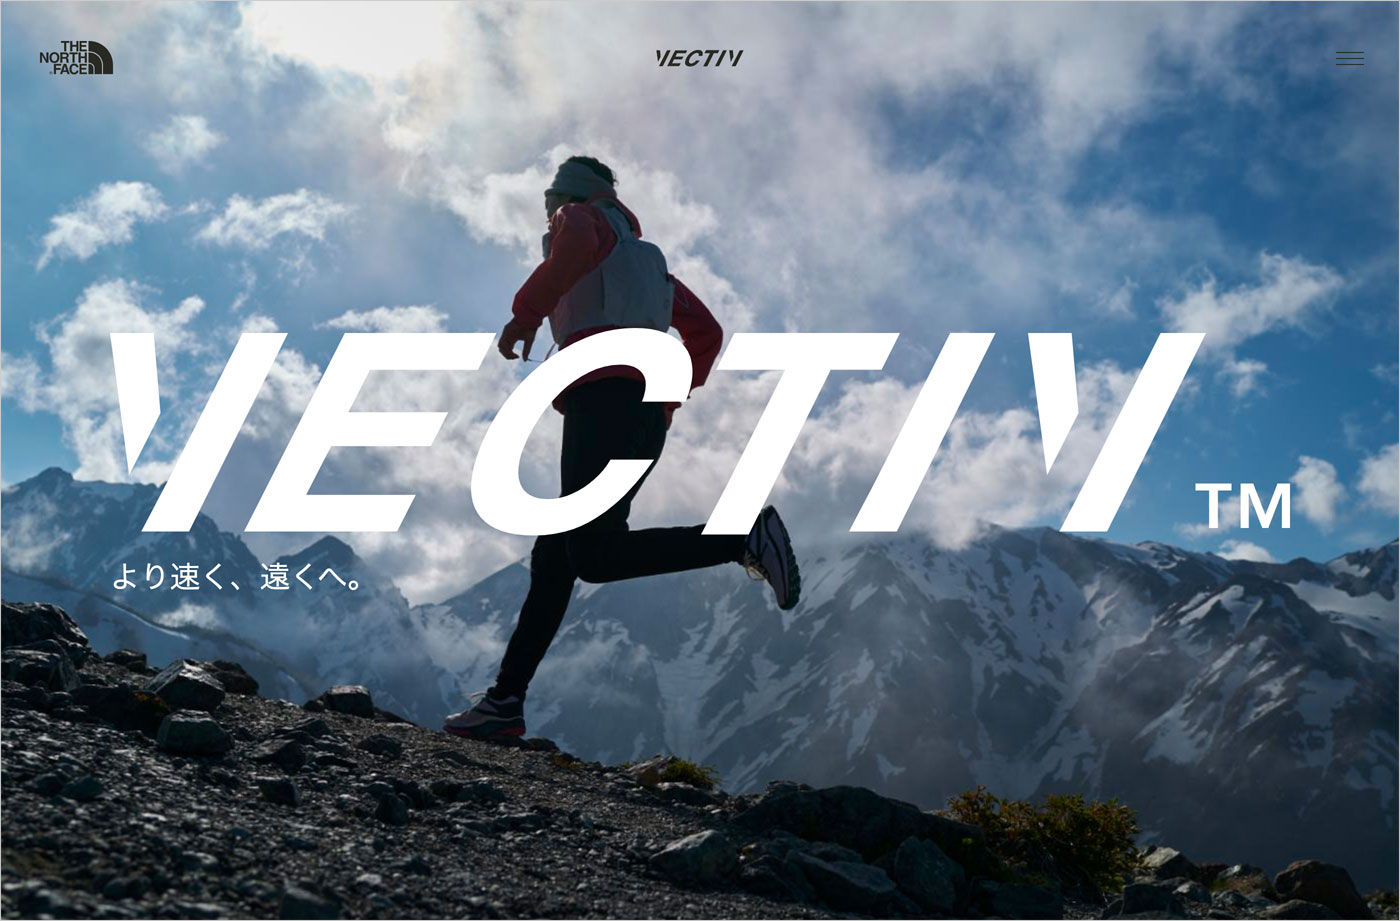 VECTIV™ | THE NORTH FACE-GOLDWINウェブサイトの画面キャプチャ画像